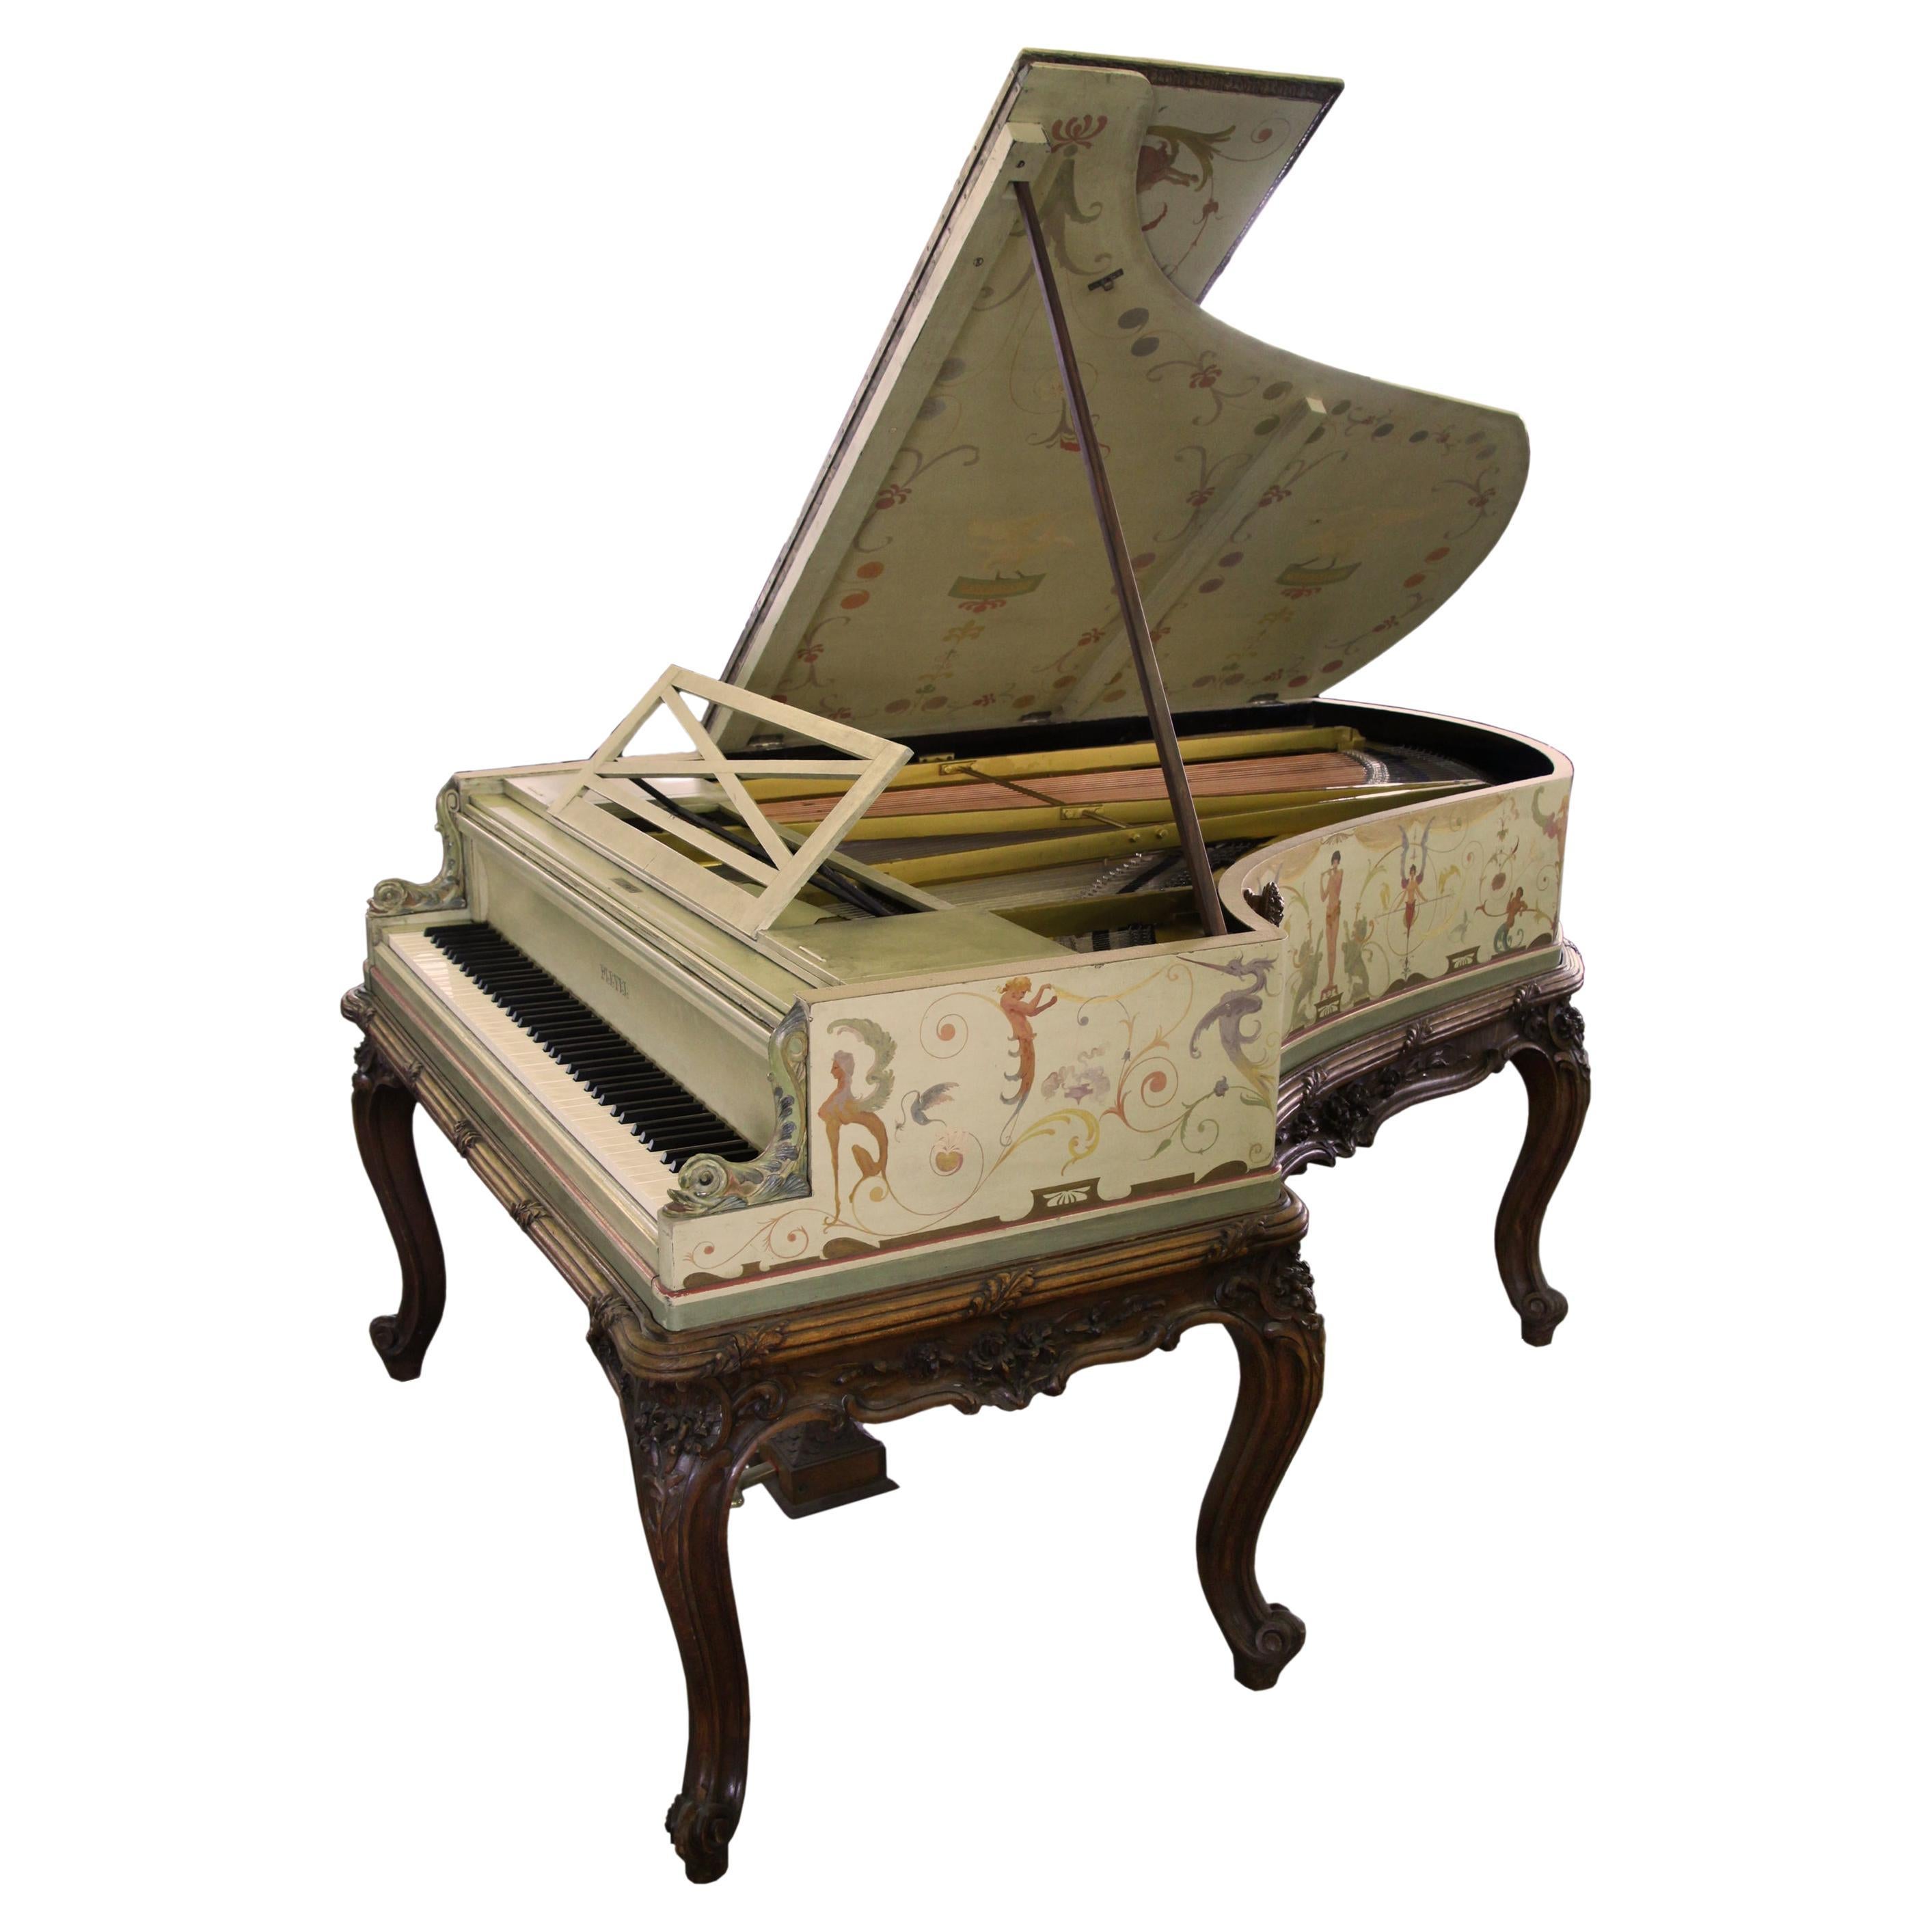 Pied cabriole Pleyel Grand Piano de style berainesque peint à la main signé G. Meunier